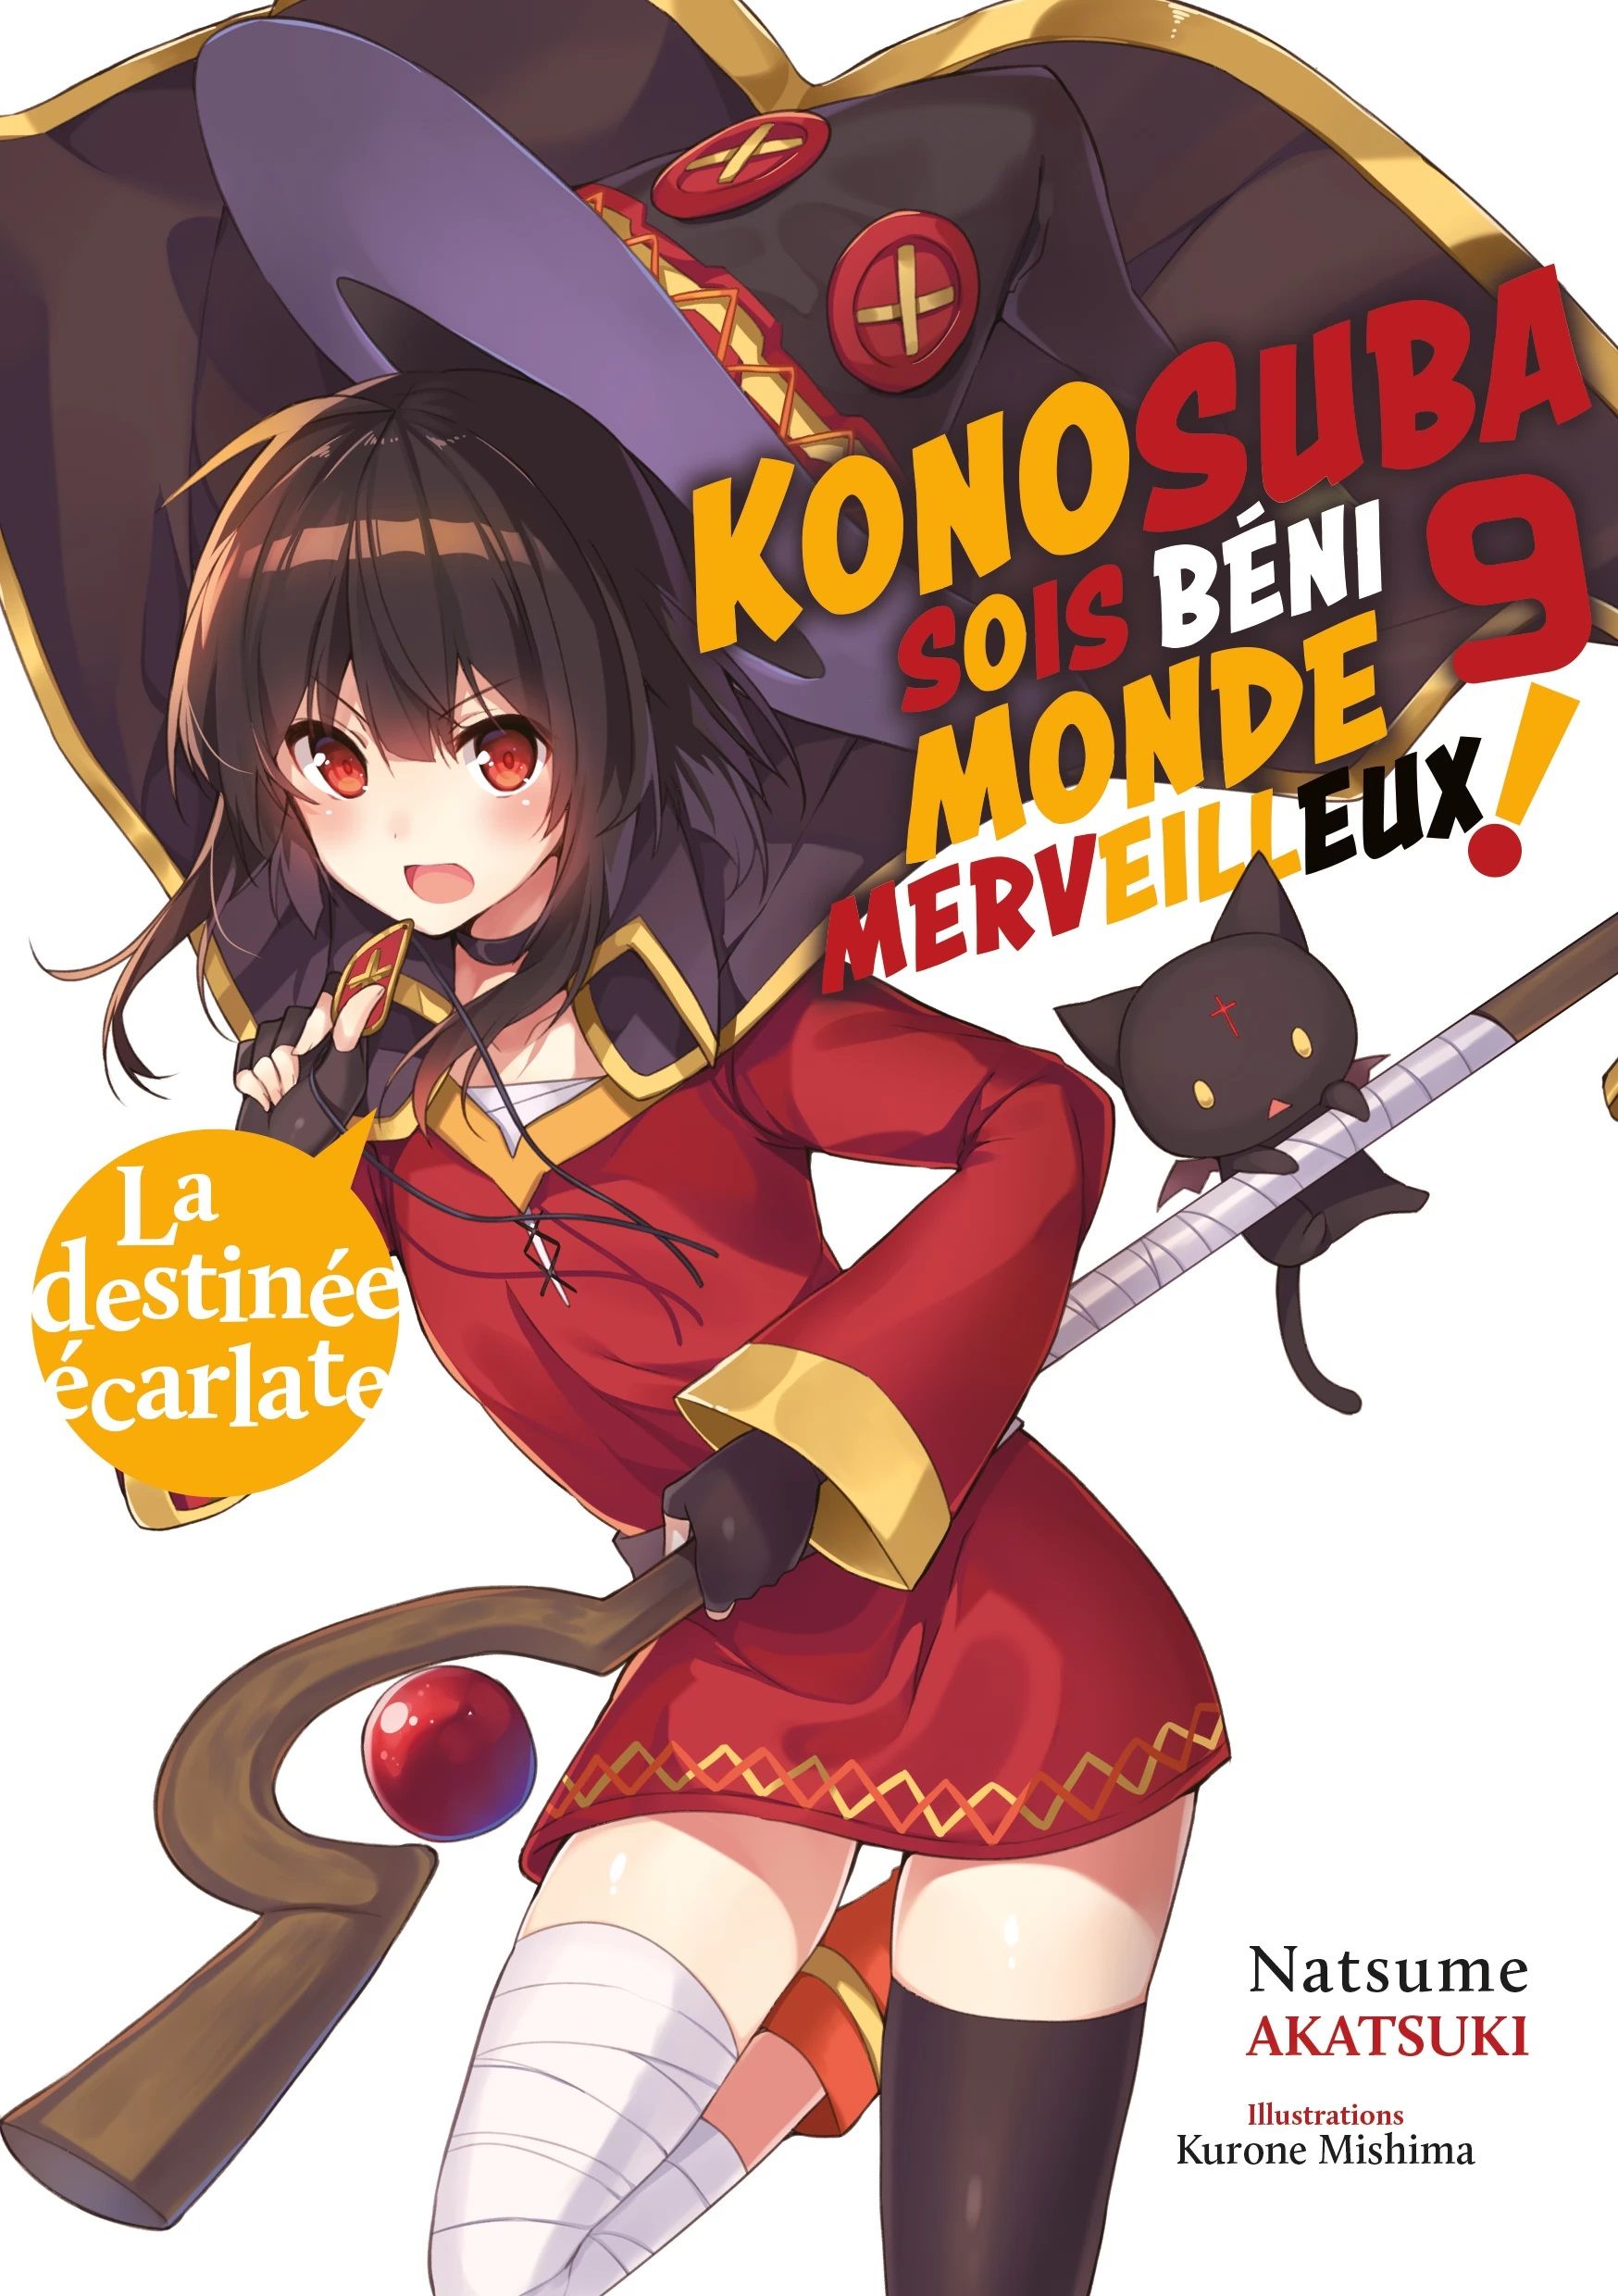 Konosuba - Sois Béni Monde Merveilleux - Light Novel Vol.9